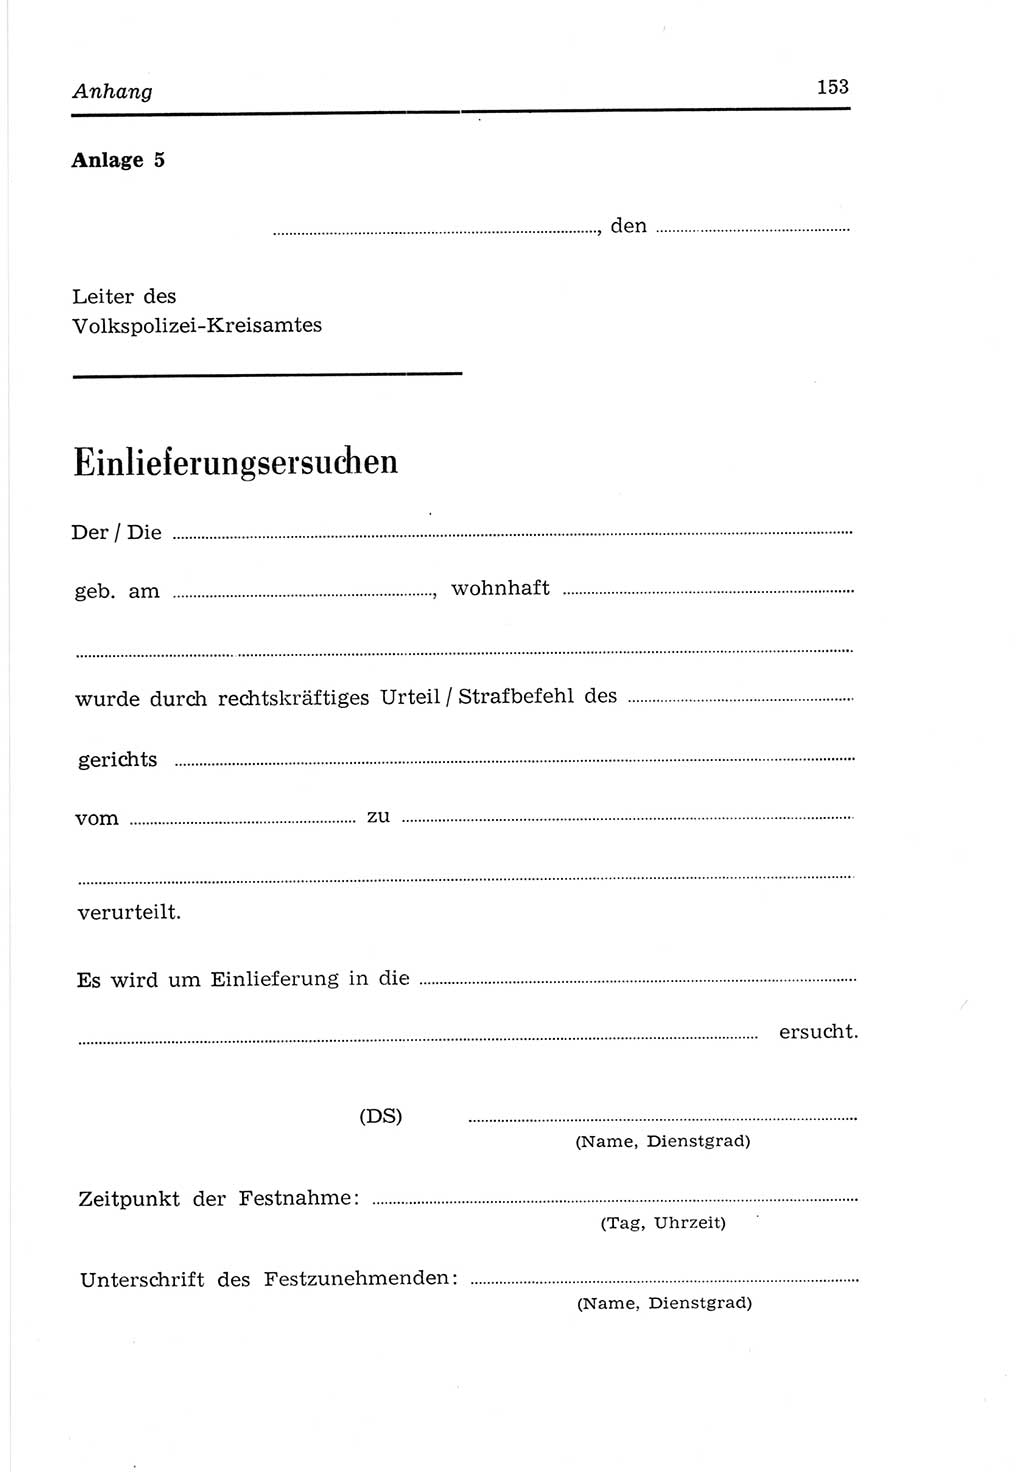 Strafvollzugs- und Wiedereingliederungsgesetz (SVWG) der Deutschen Demokratischen Republik (DDR) 1968, Seite 153 (SVWG DDR 1968, S. 153)